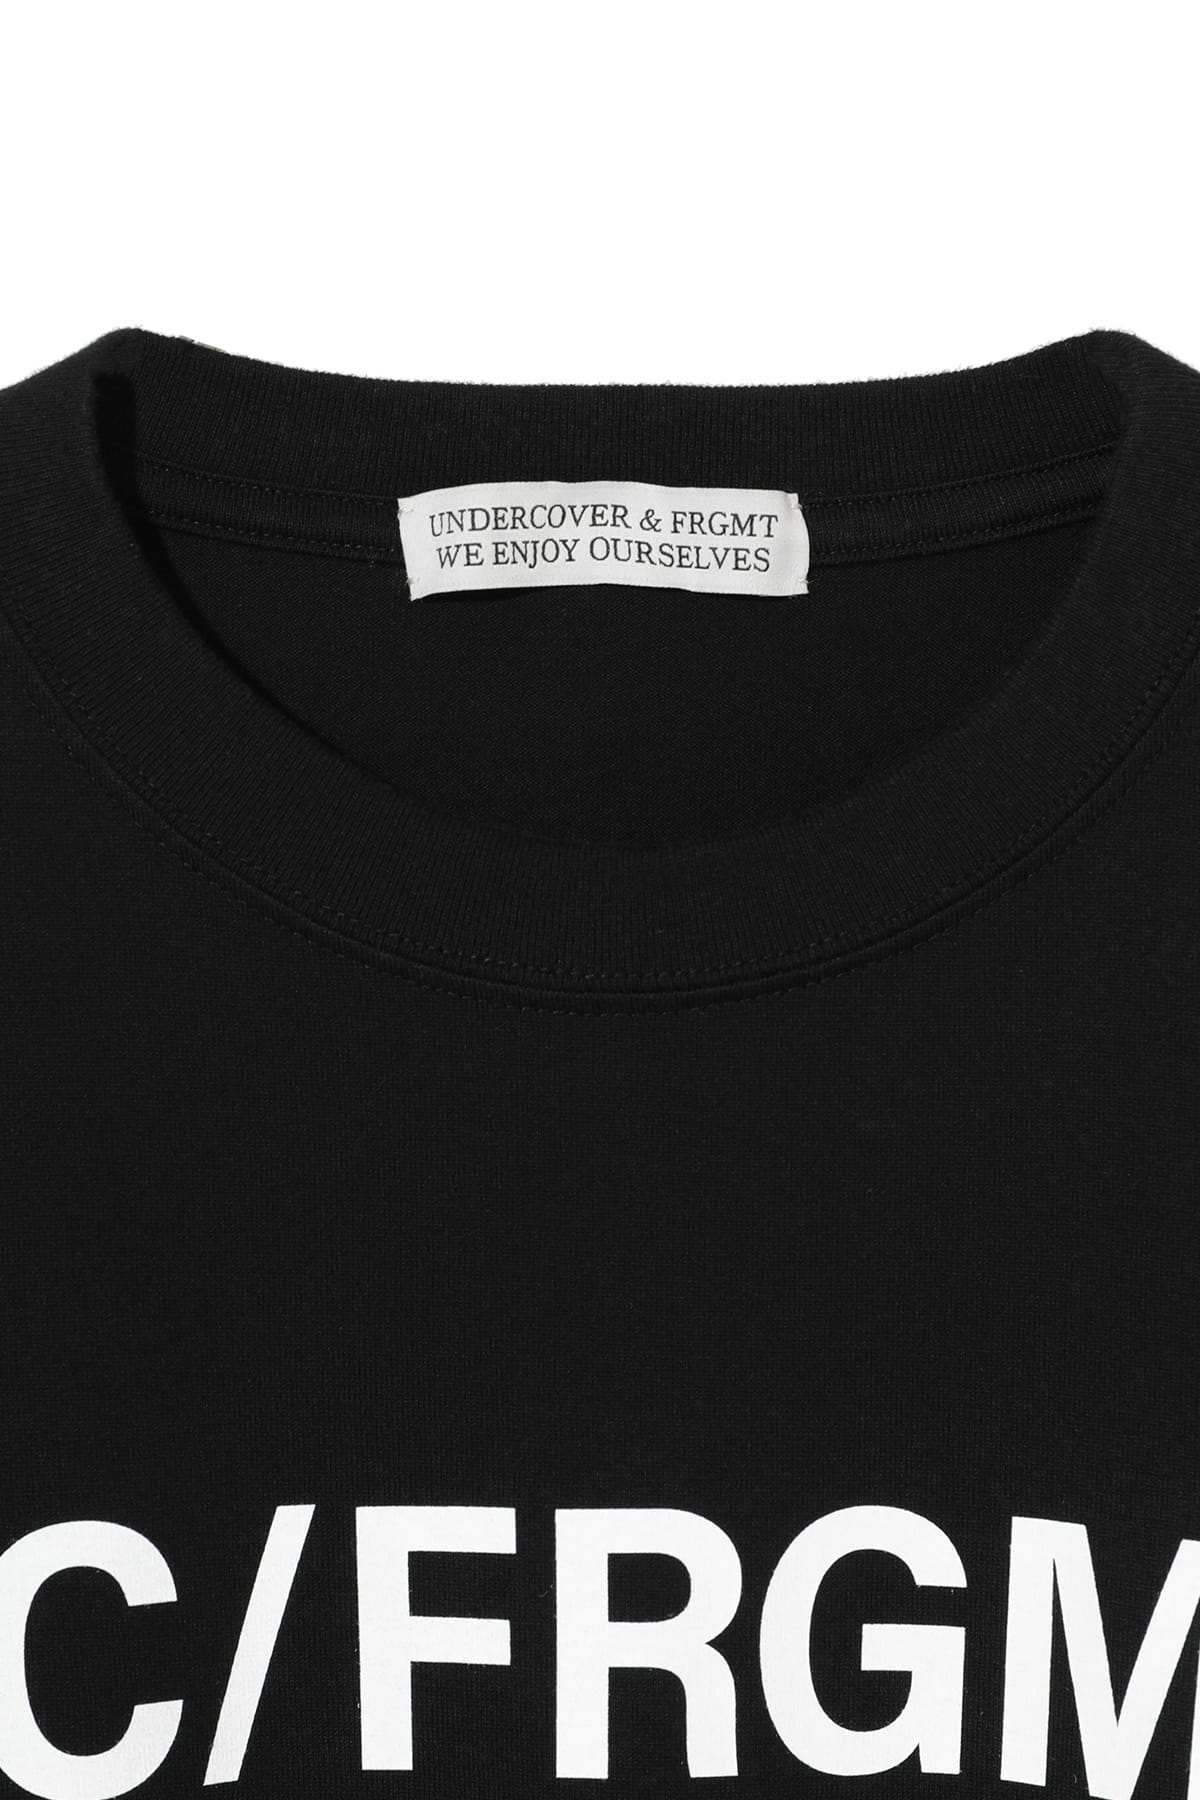 割引ショップ UNDERCOVER FRAGMENT DESIGN Tシャツ XL FRGMT